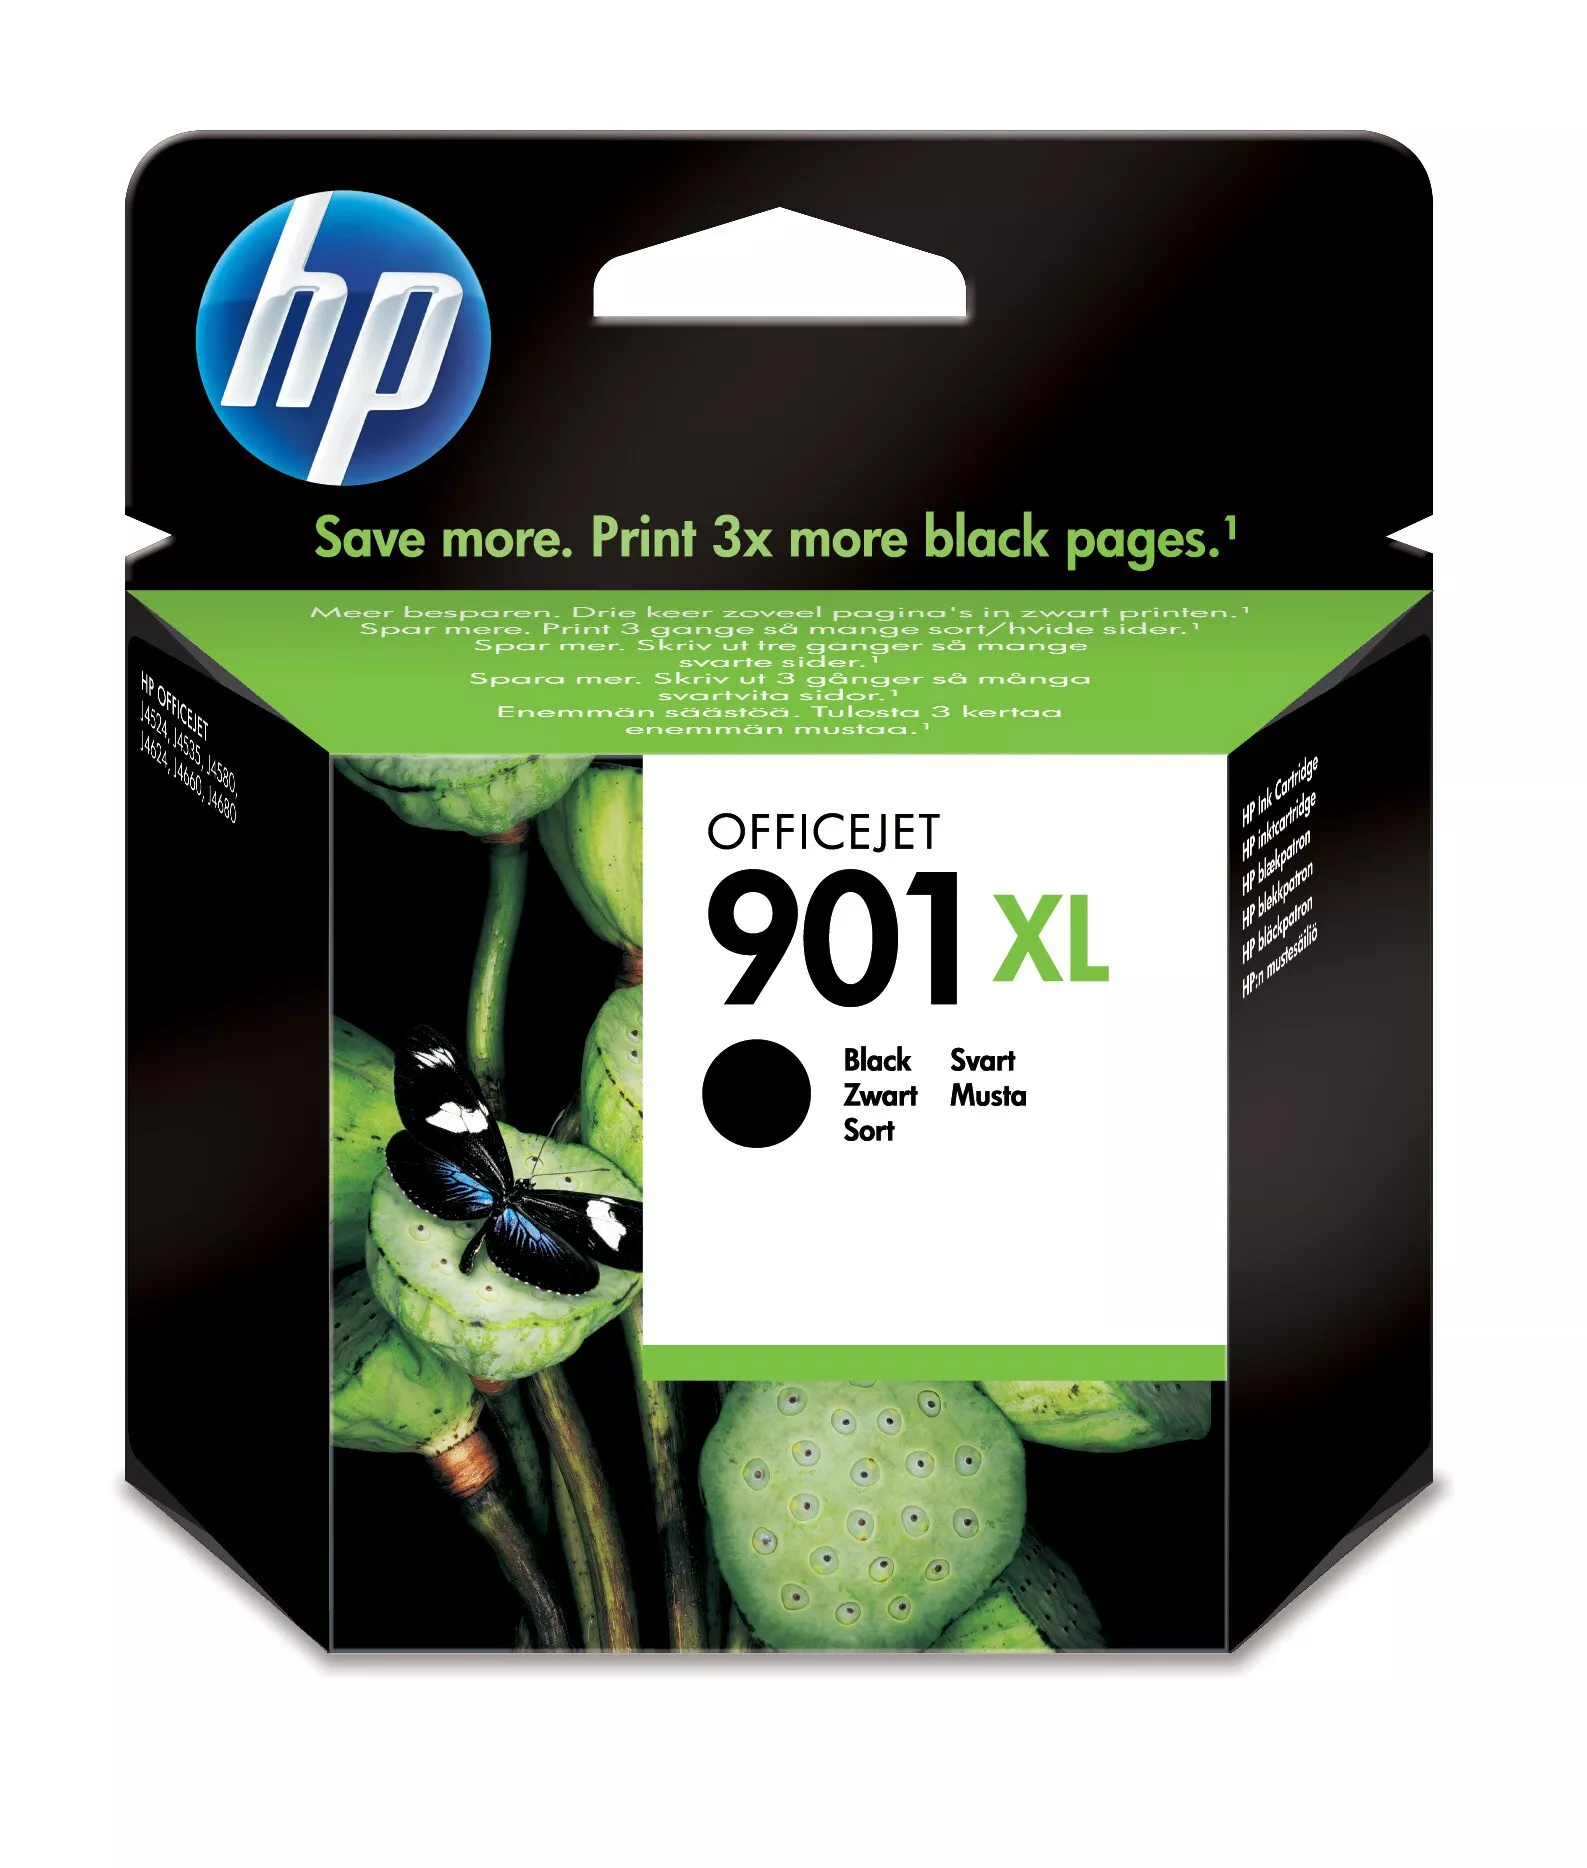 Achat HP 901XL cartouche d'encre noir grande capacité authentique au meilleur prix